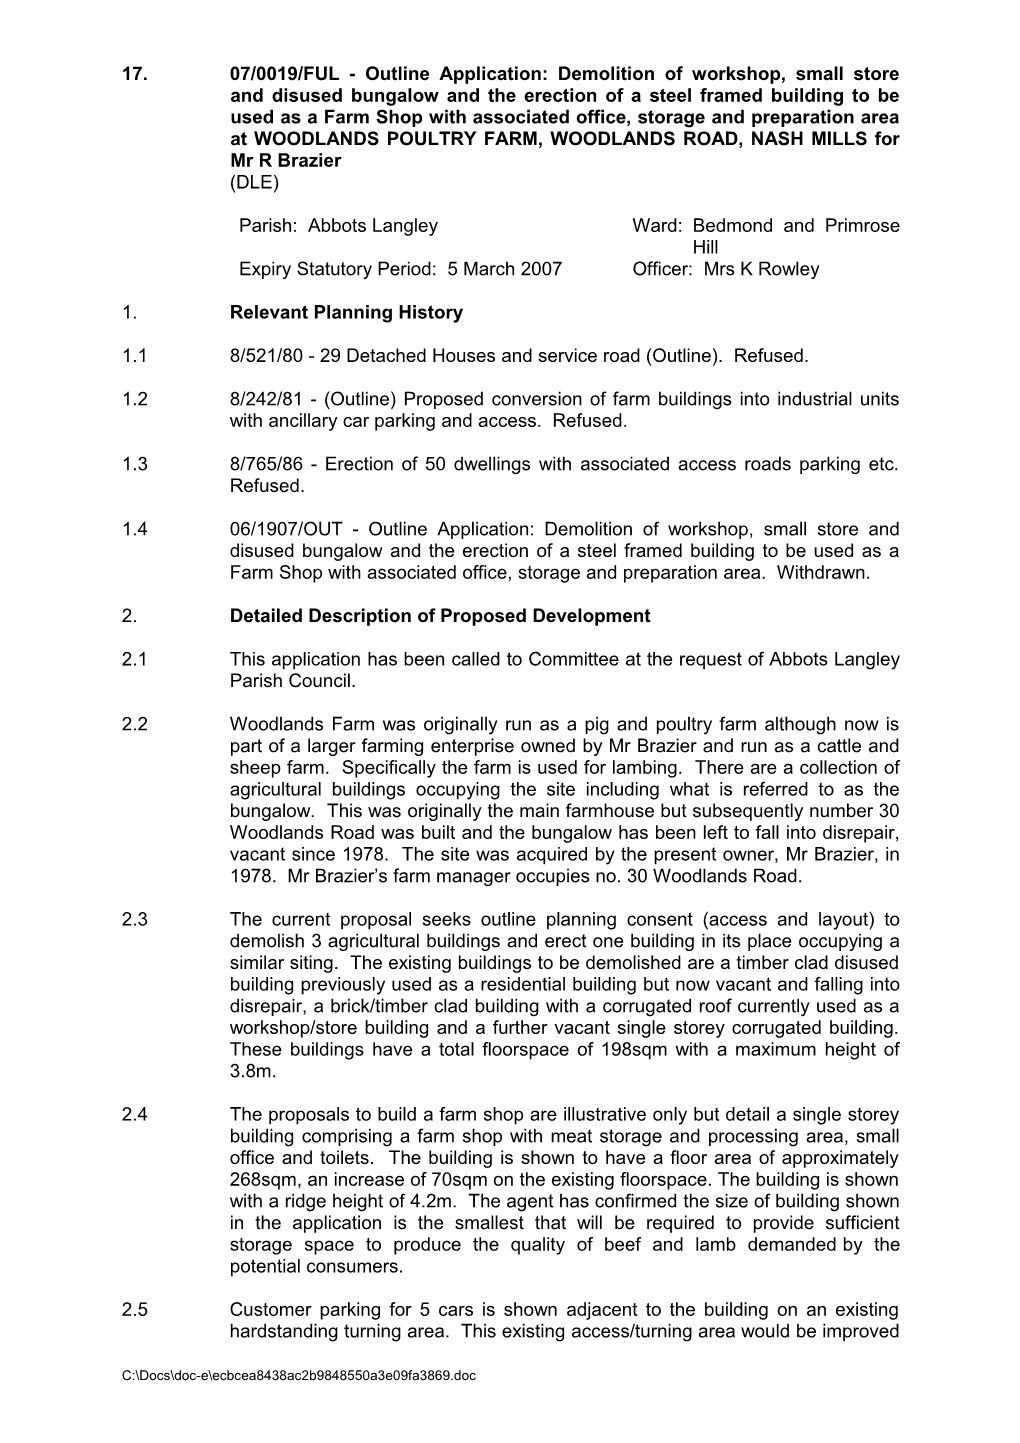 Report: Development Control 22.02.07: Part I - (17) 07 0019 Ful - Woodlands Farm Shop